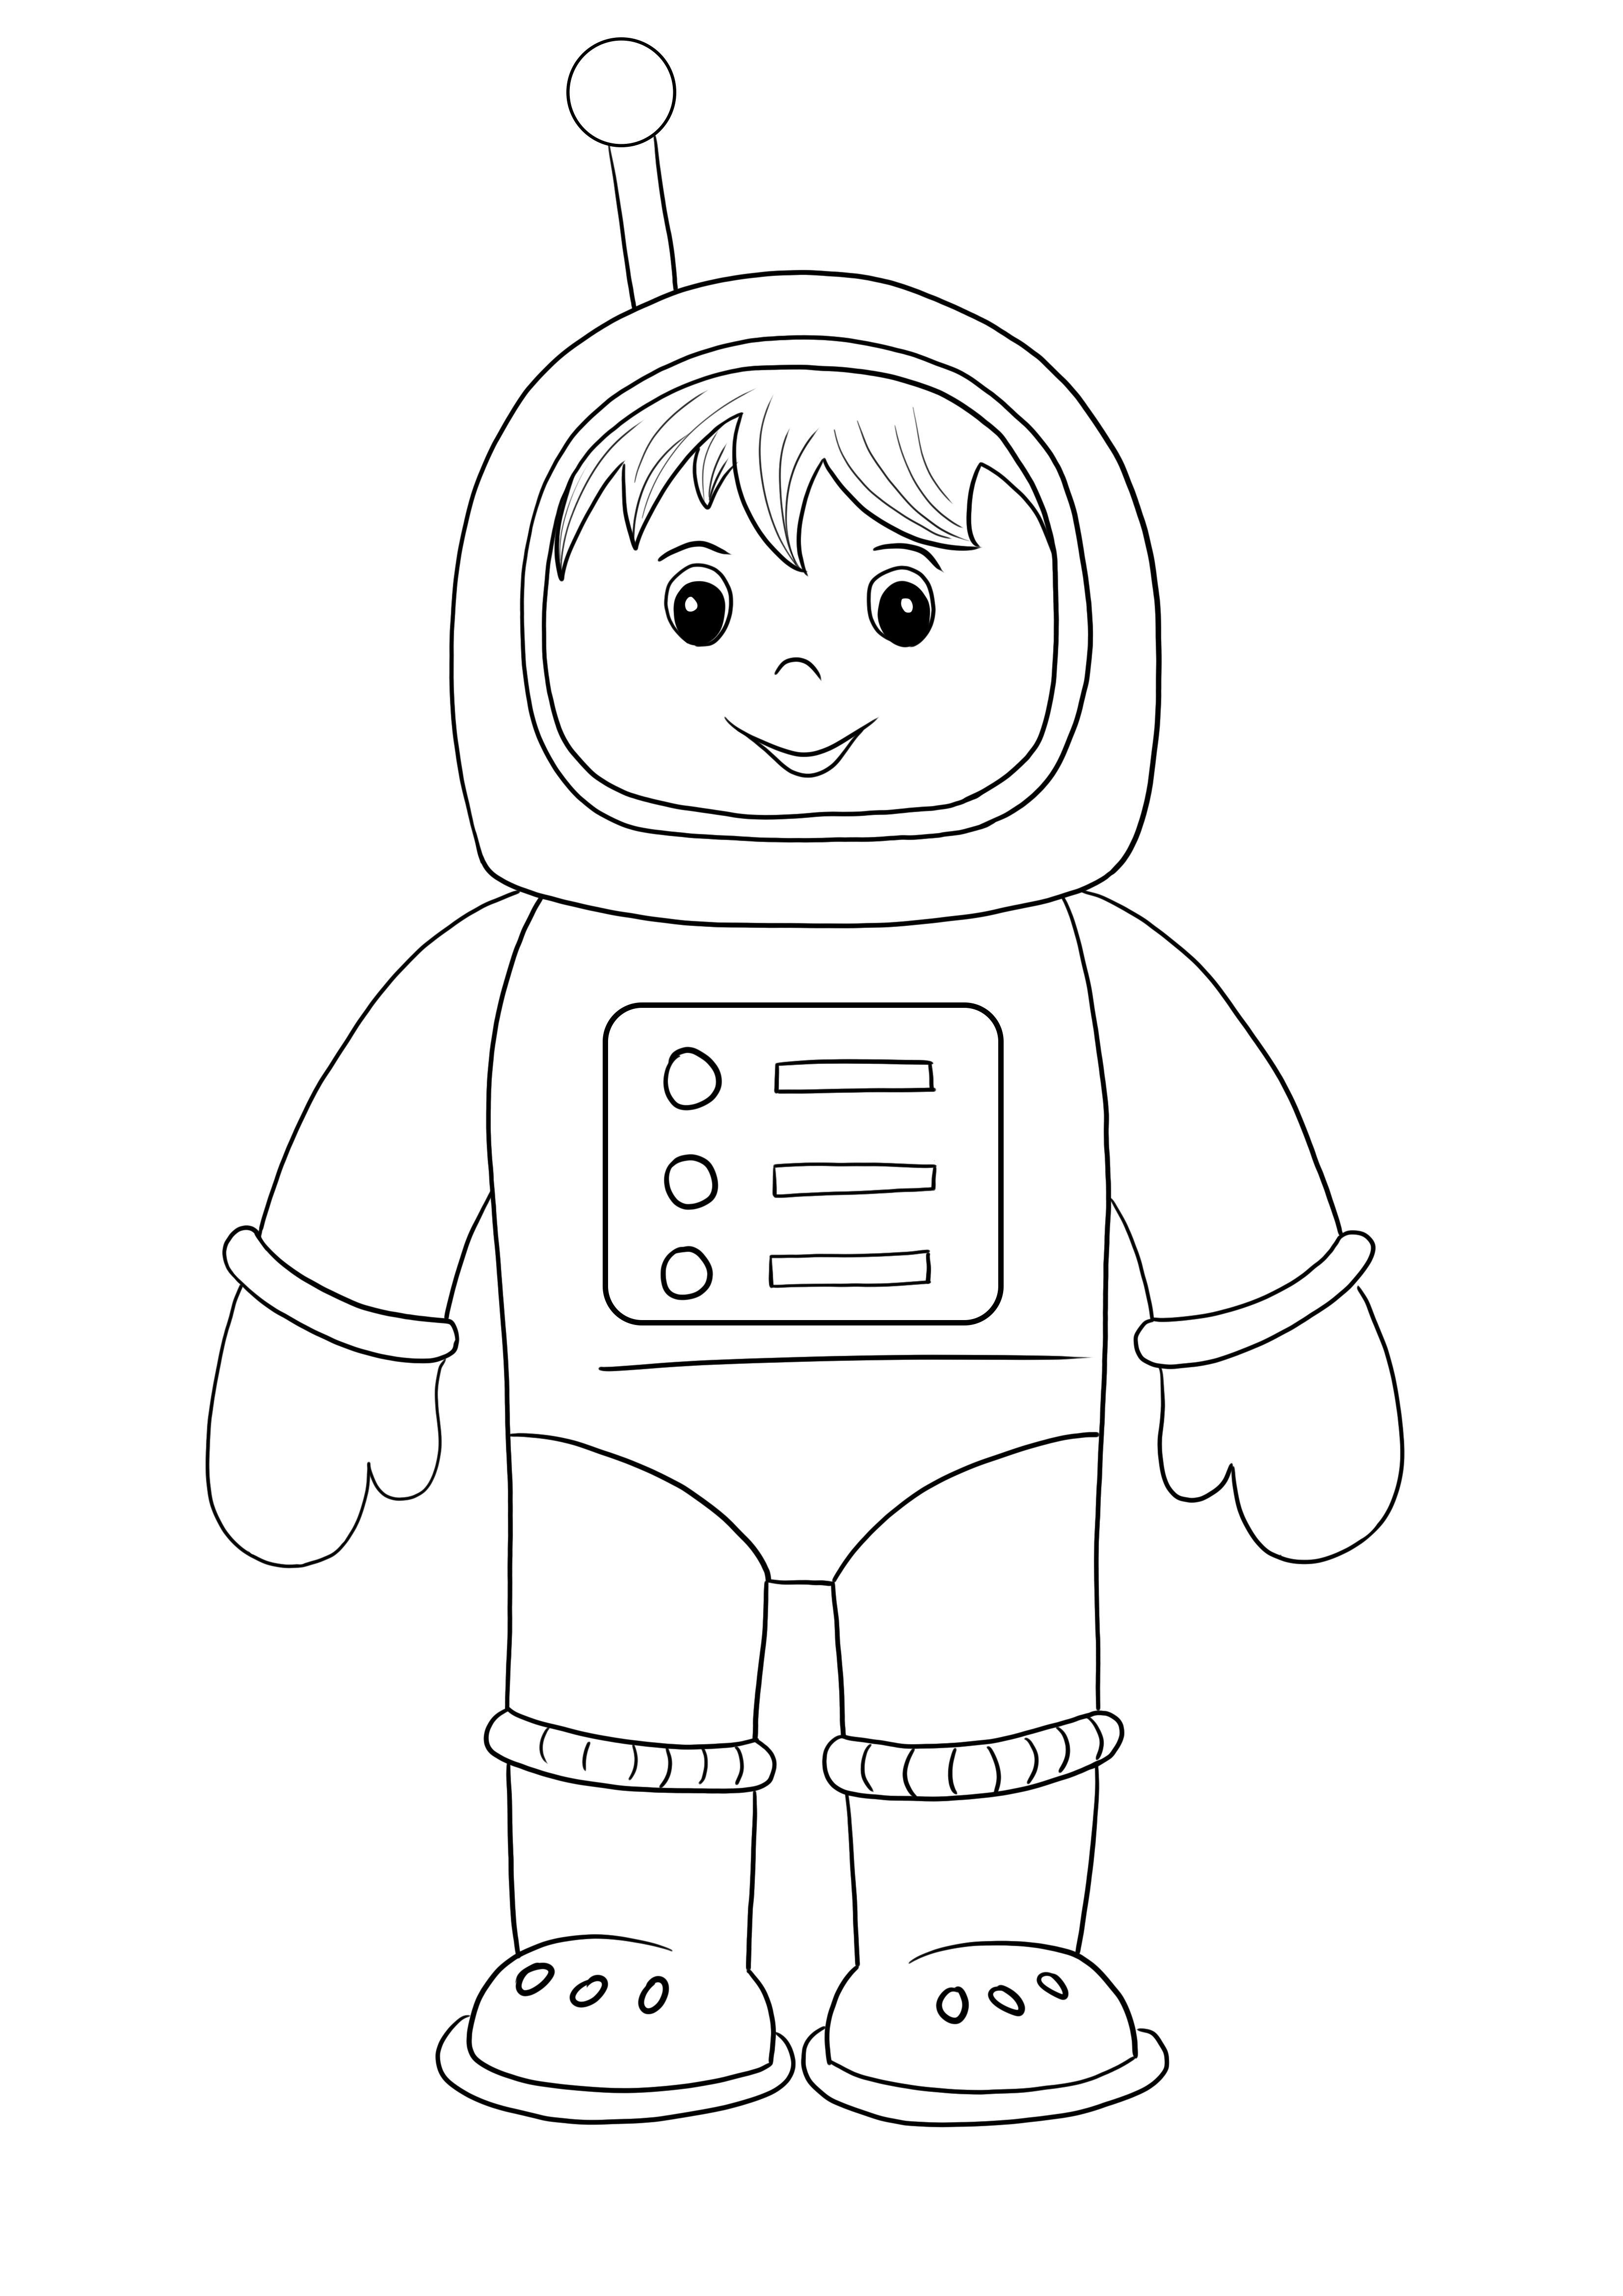 Ücretsiz baskı ve boyama için uzay giysili astronot